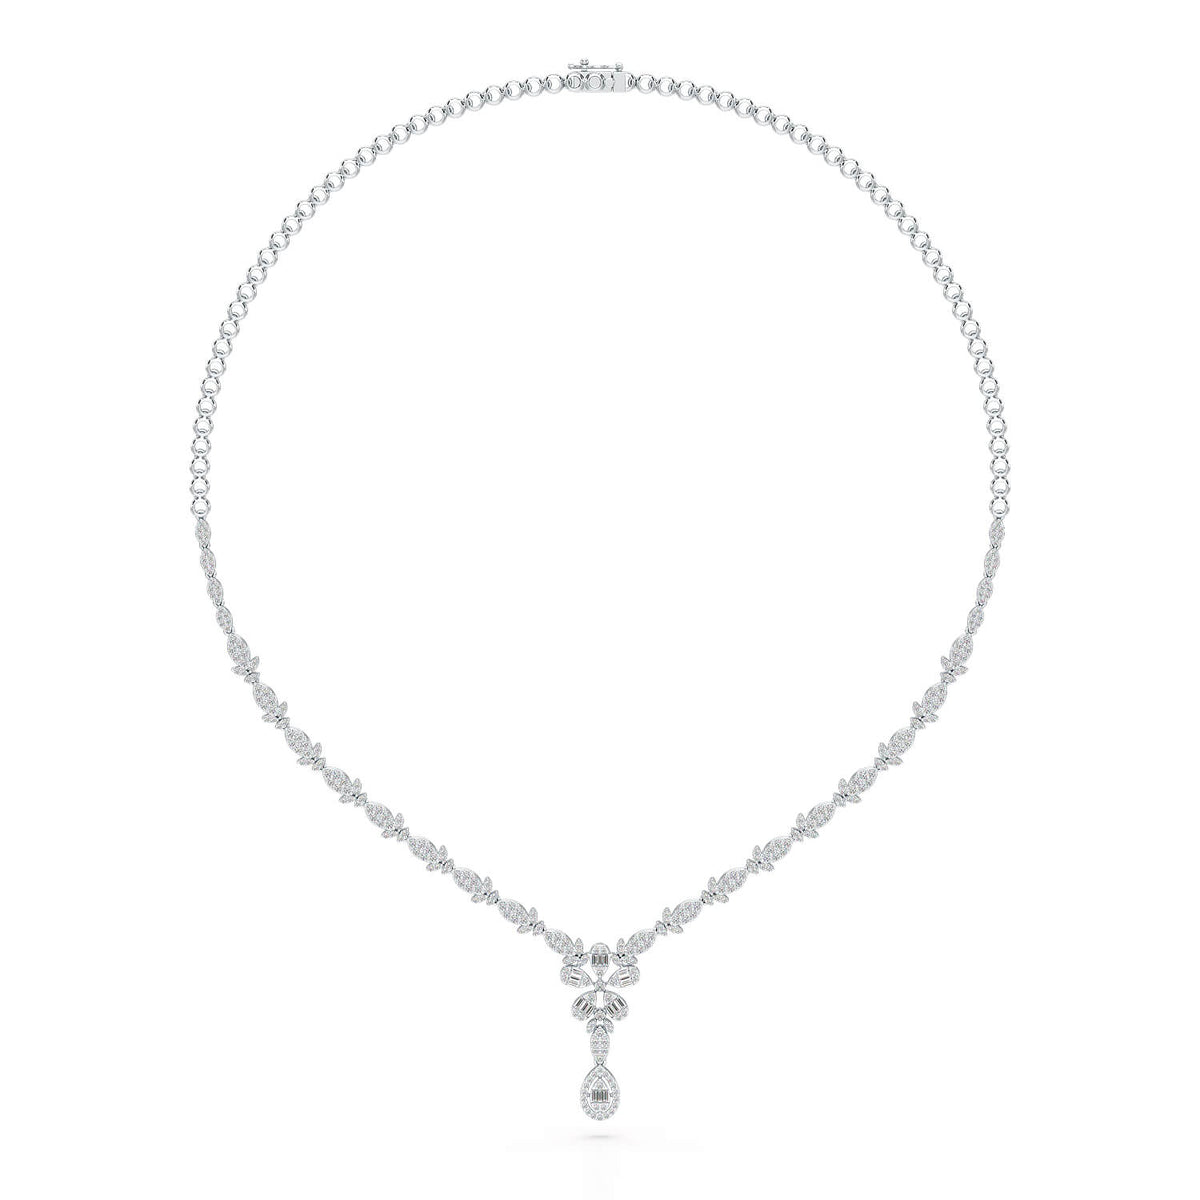 2.65 CT Baguette Cut Lab Grown Diamond Necklace